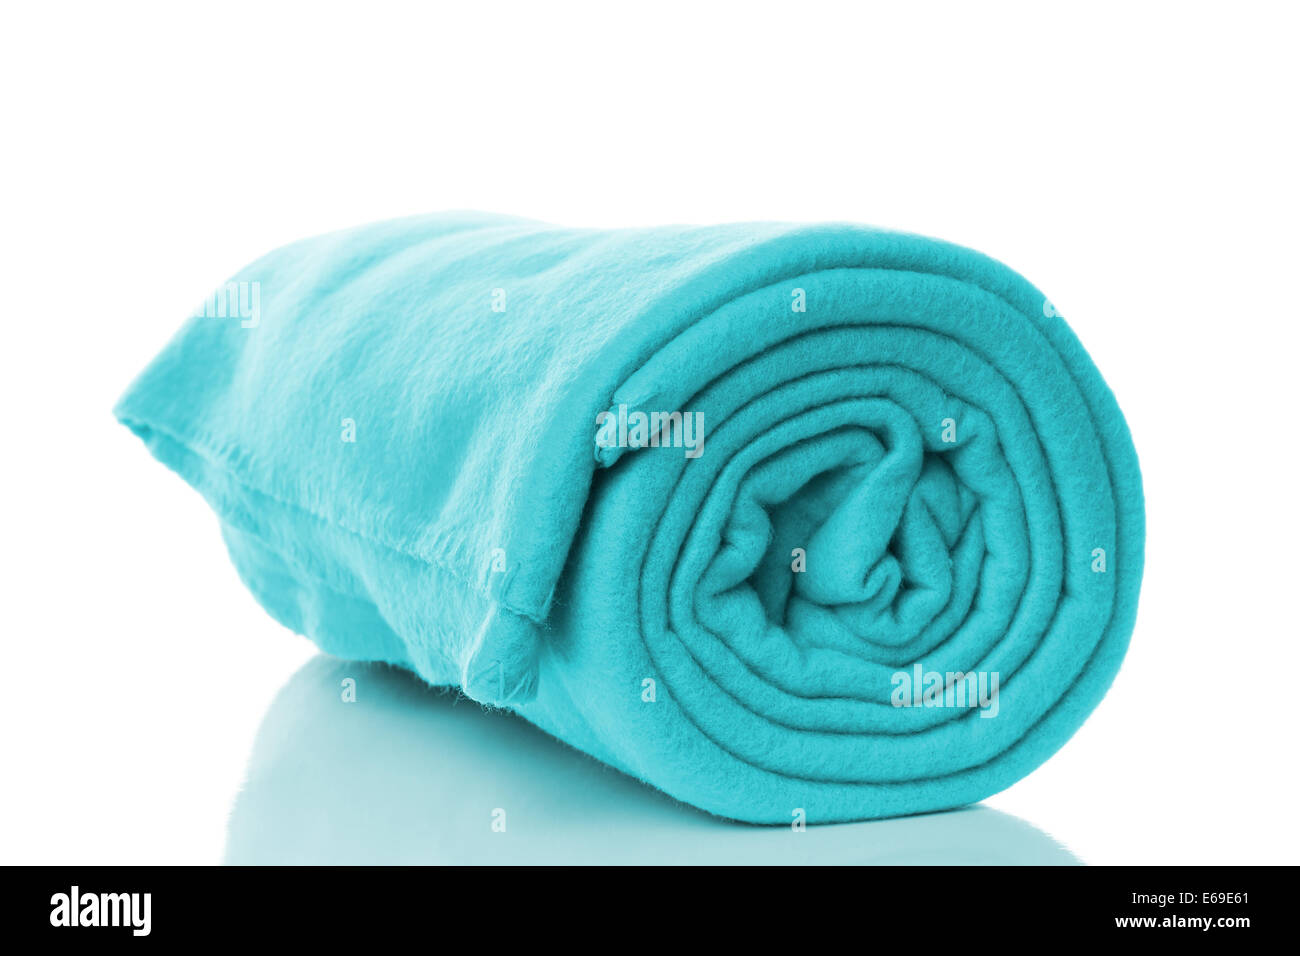 turquoise or cyan fleece blanket Stock Photo